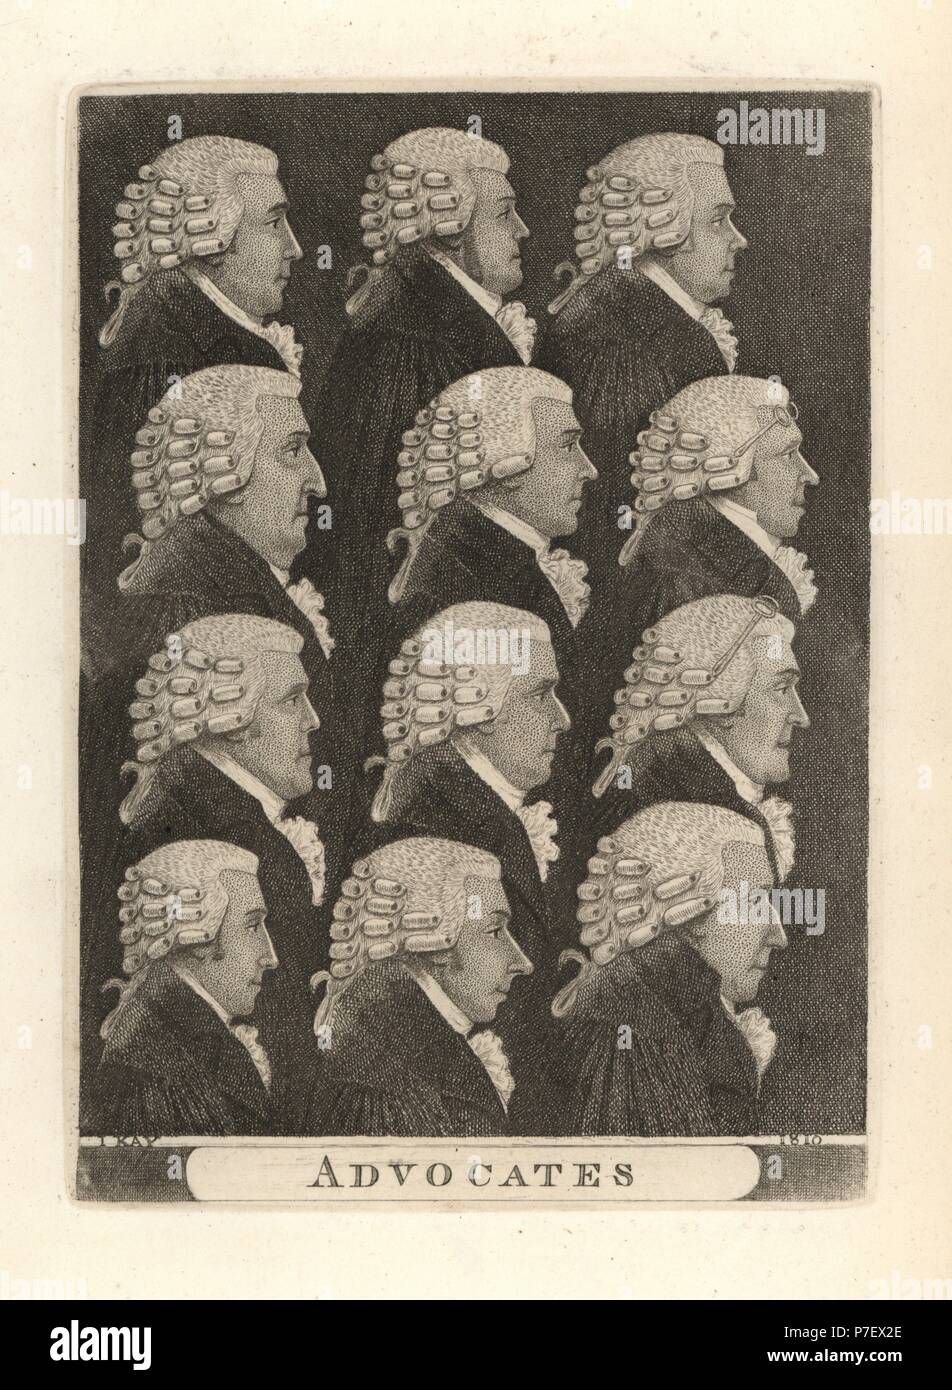 Dodici sostenitori invocare con parrucche. Incisione su rame di John Kay da una serie di ritratti di originale e la caricatura acqueforti, Hugh Paton, Edimburgo, 1842. Foto Stock